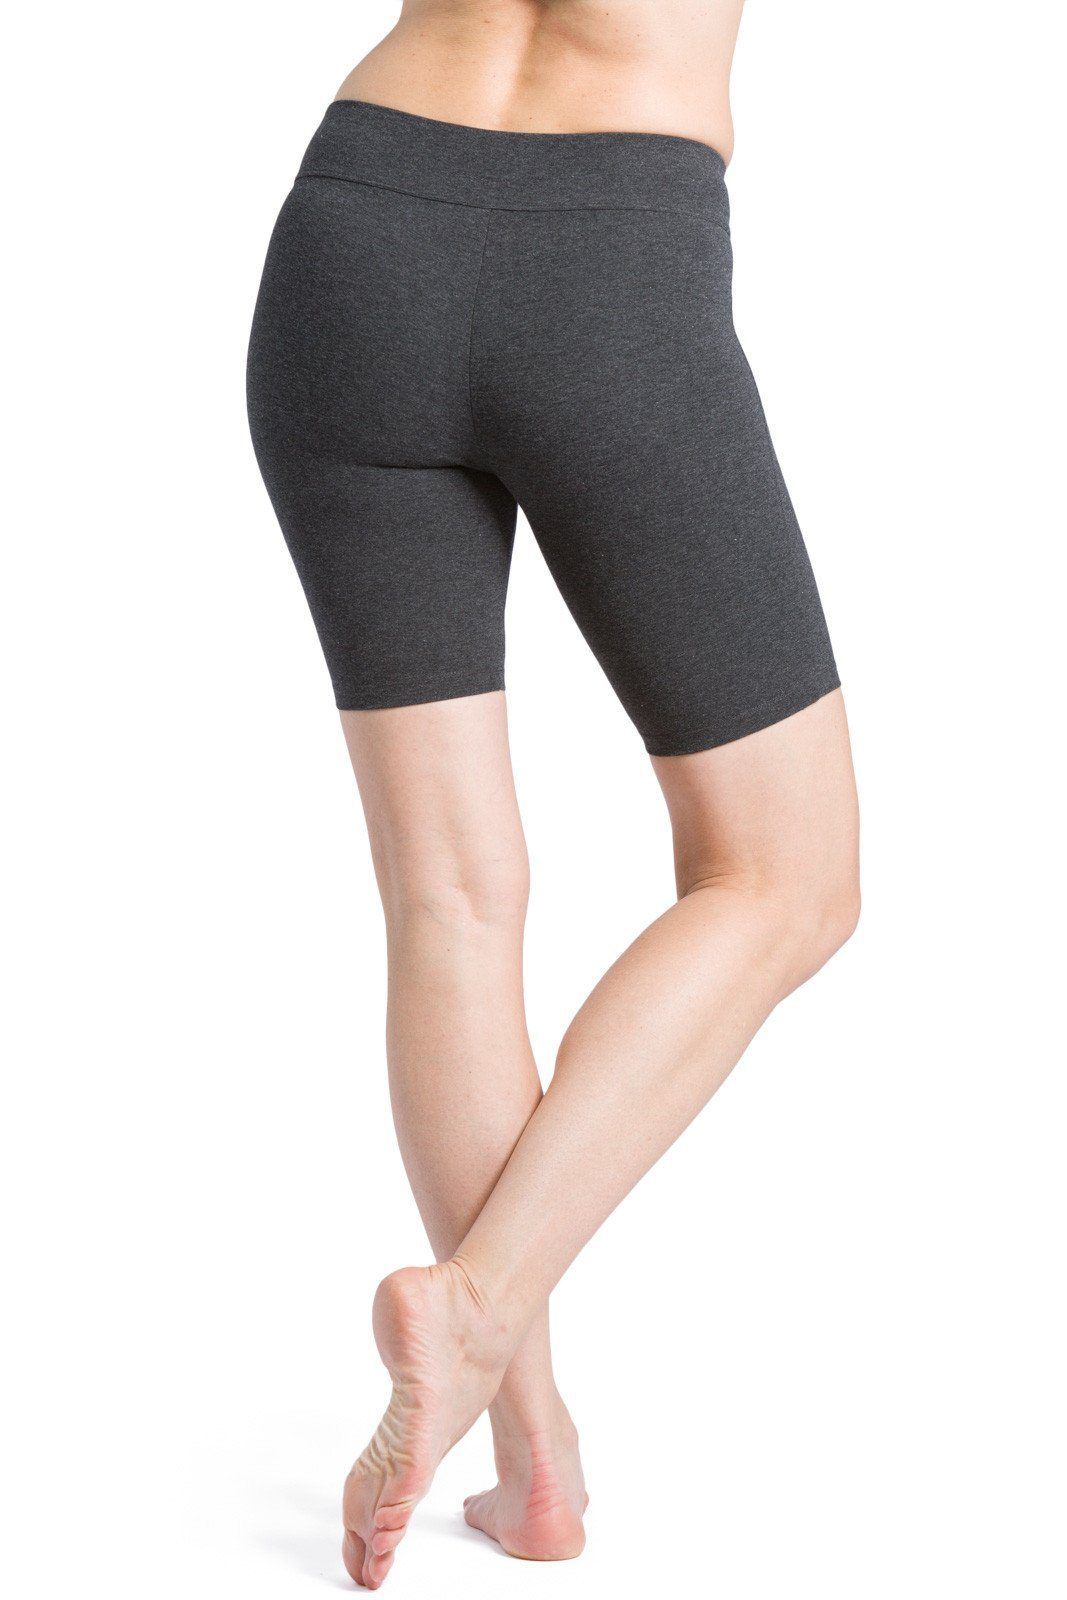 Women's yoga short leggings